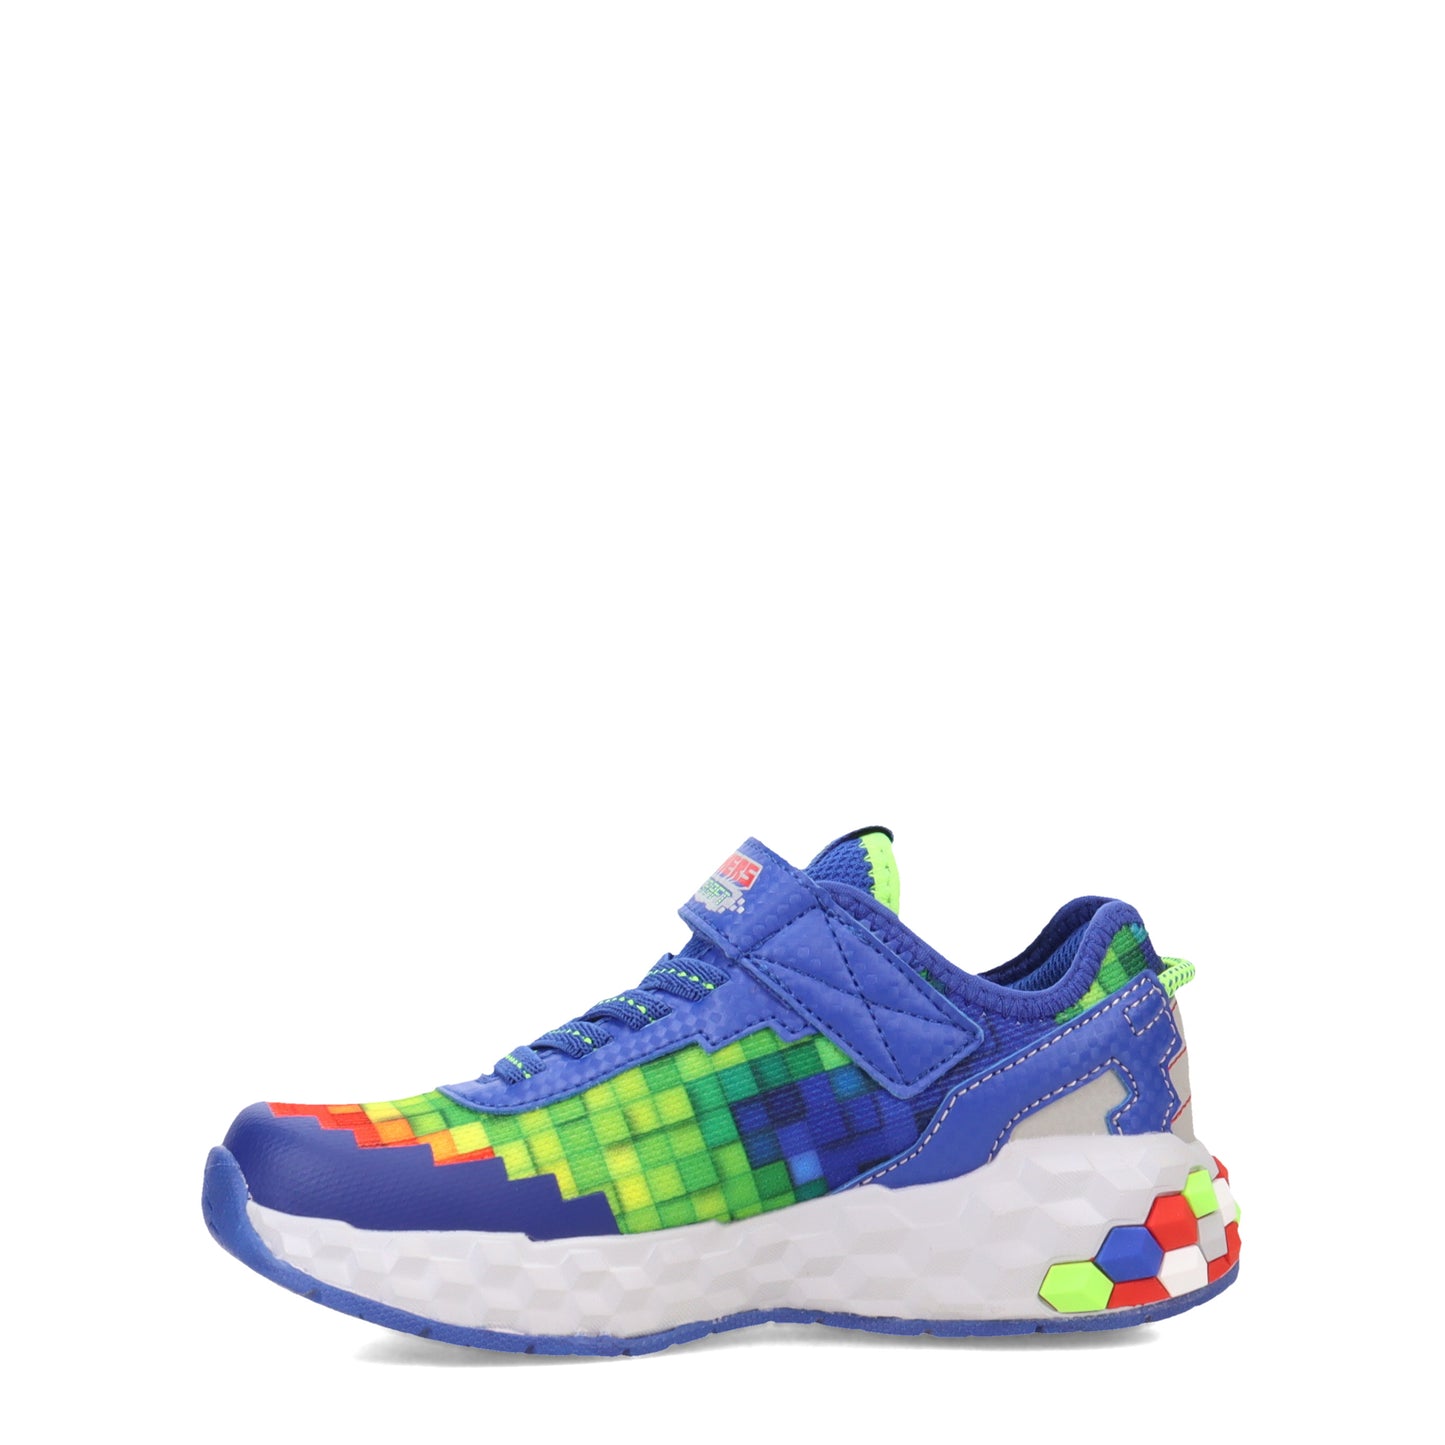 Peltz Shoes  Boy's Skechers Mega-Craft 2.0 Sneaker - Little Kid & Big Kid BLUE MULTI 402204L-BLMT